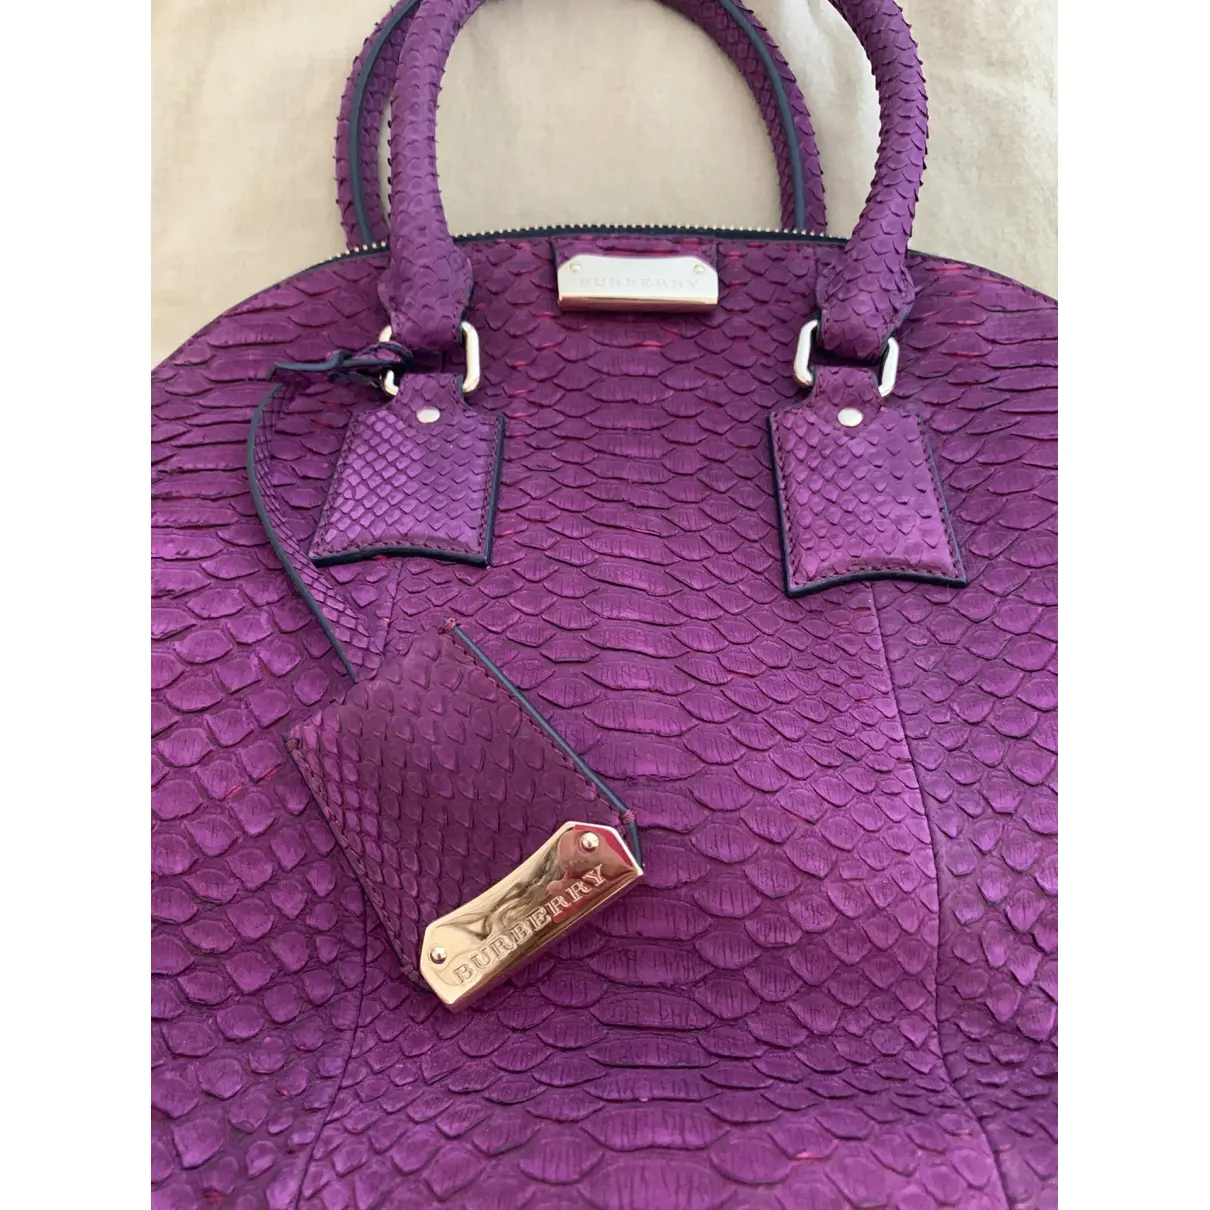 Buy Burberry Orchard lizard handbag online